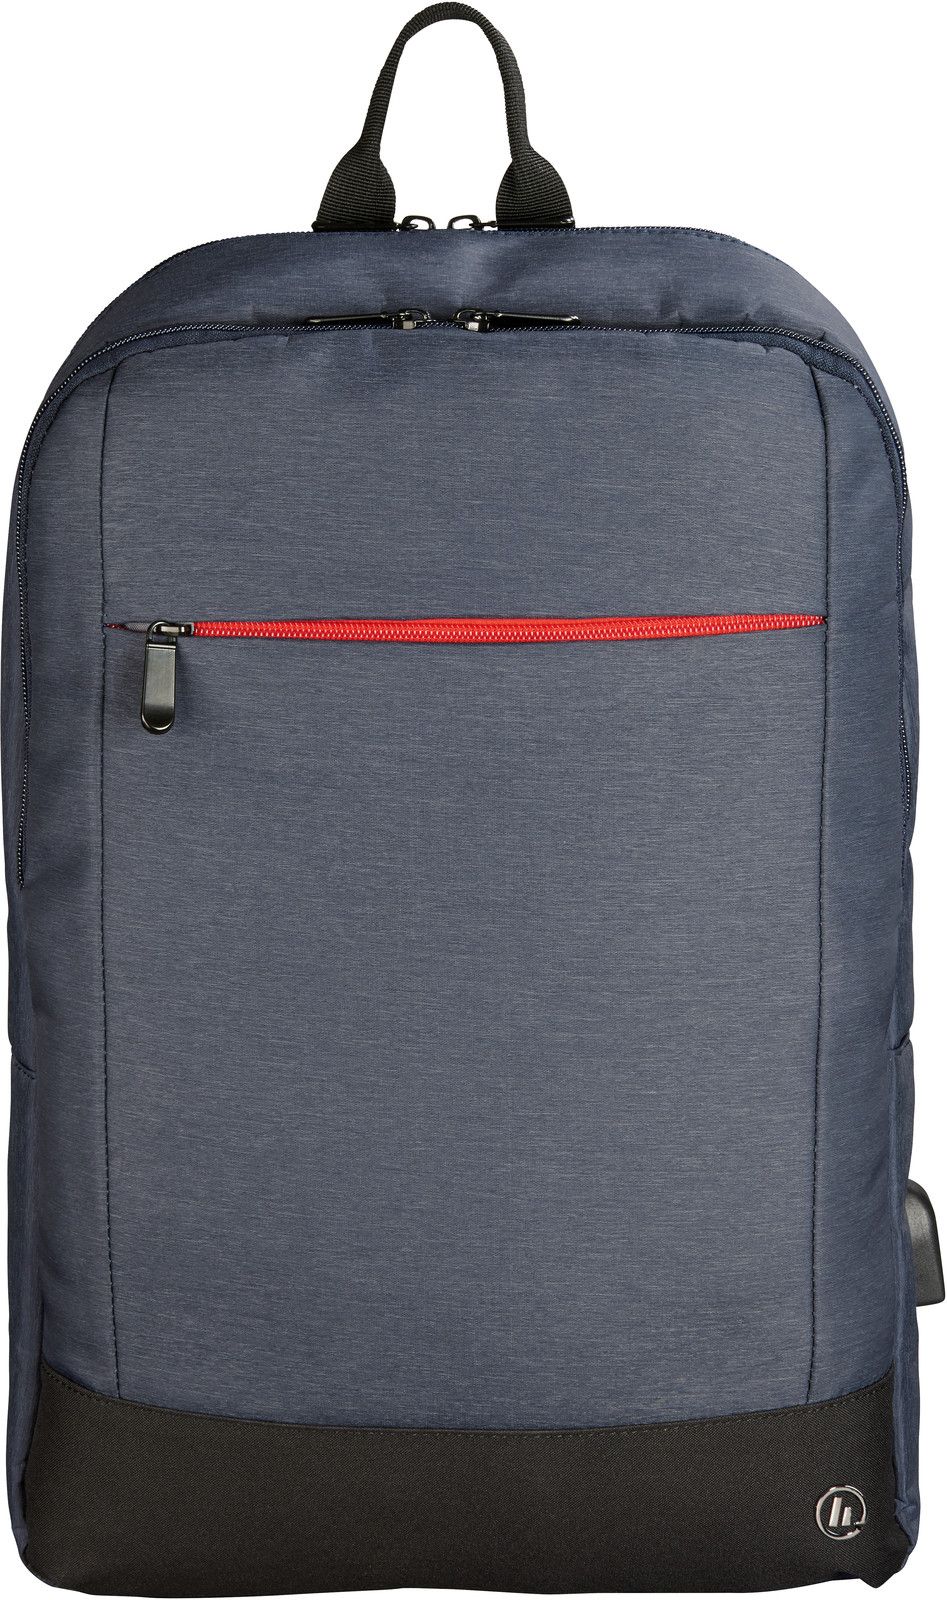 Hama Manchester Ryggsäck med USB-uttag (15") - Blå